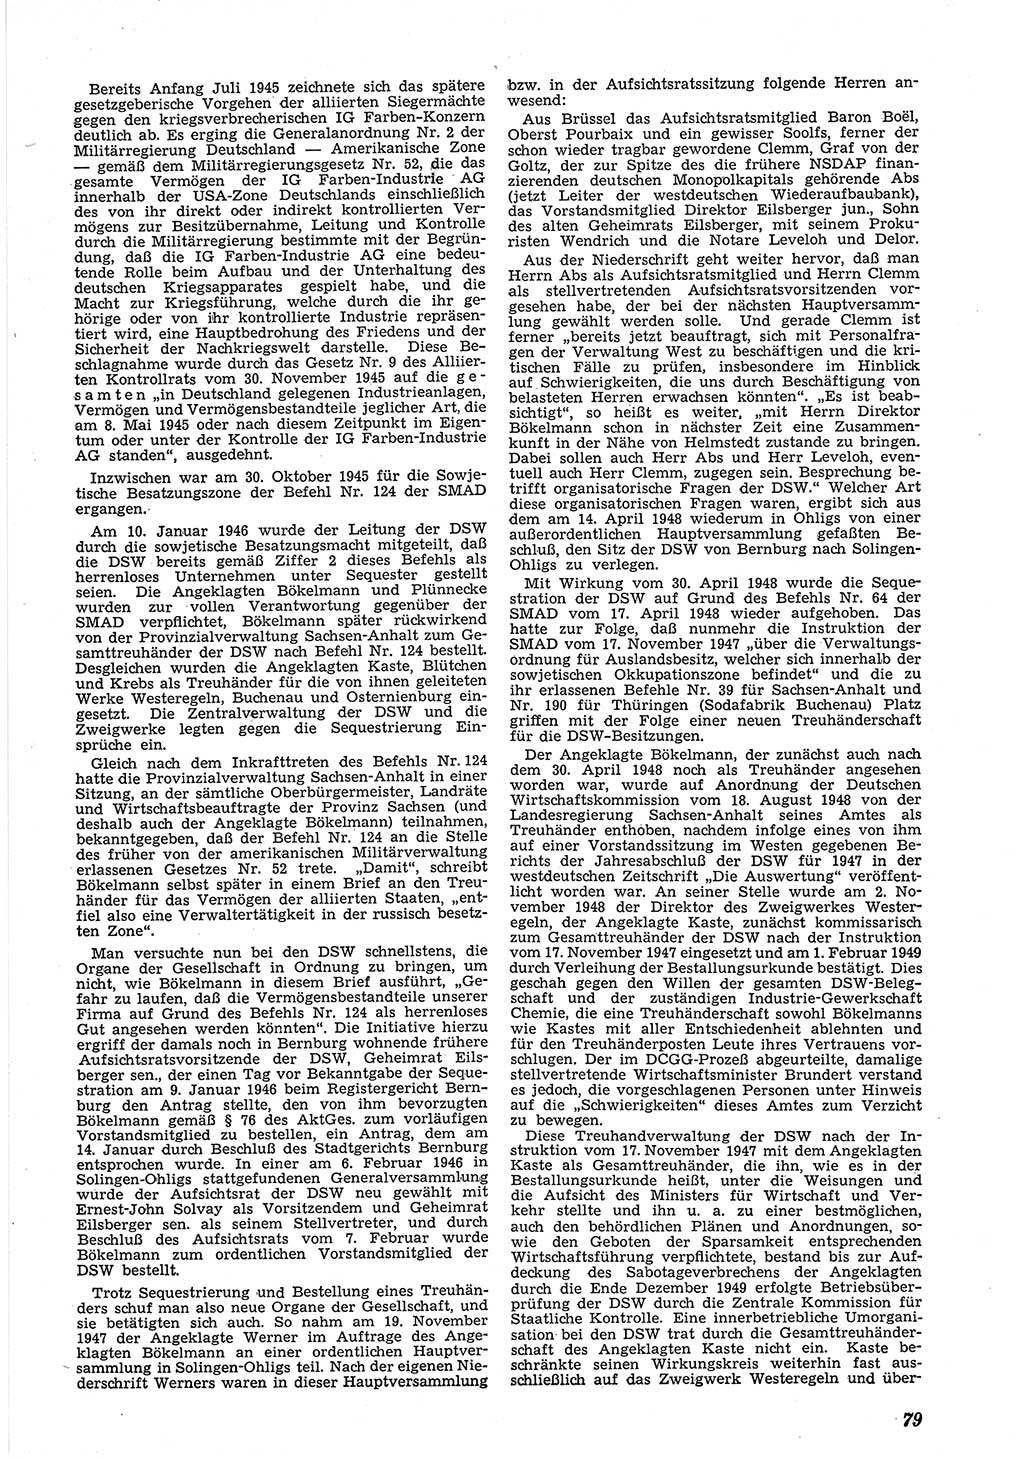 Neue Justiz (NJ), Zeitschrift für Recht und Rechtswissenschaft [Deutsche Demokratische Republik (DDR)], 5. Jahrgang 1951, Seite 79 (NJ DDR 1951, S. 79)